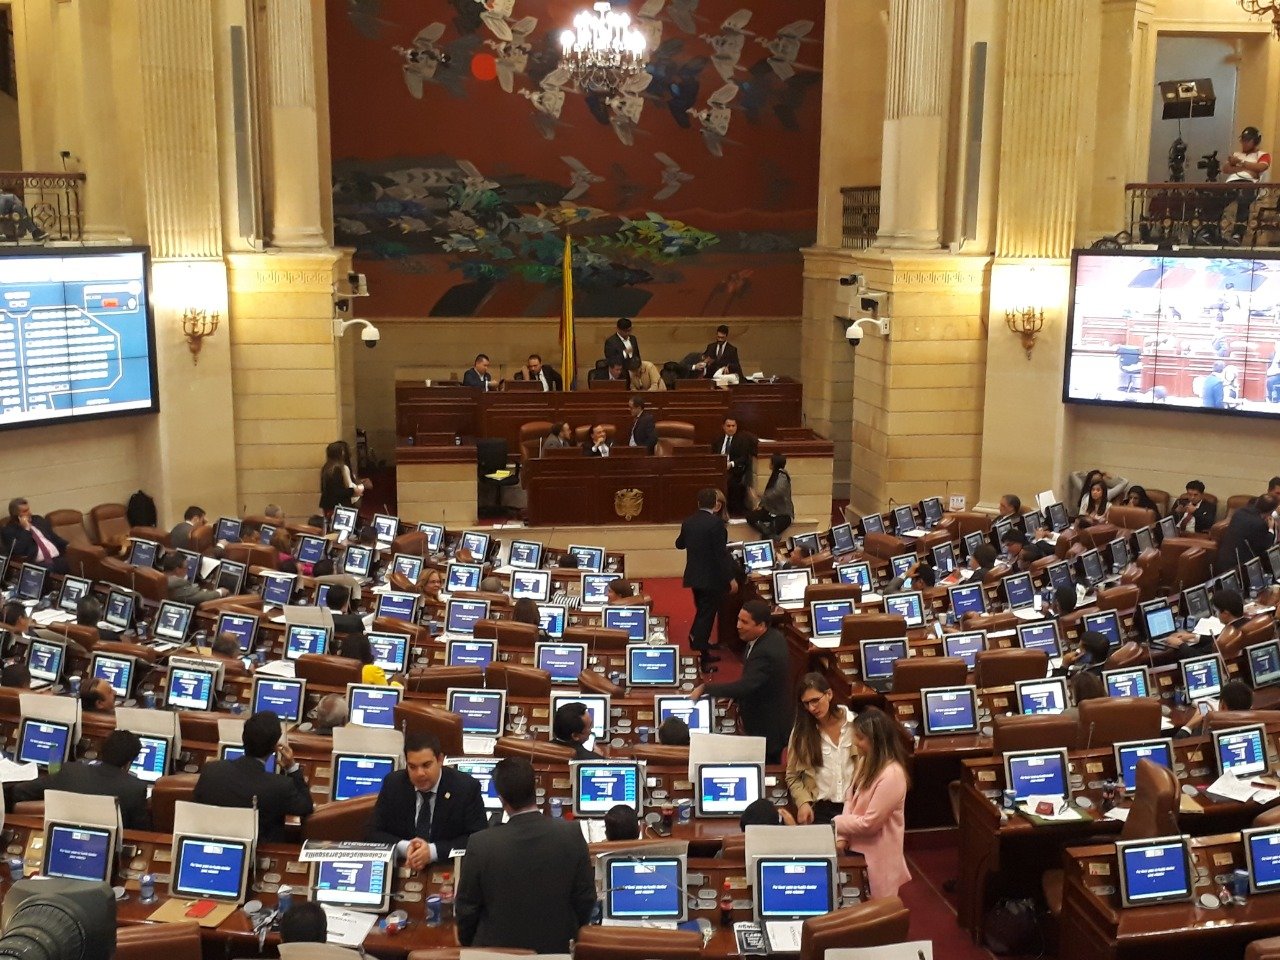 La plenaria de la Cámara de Representantes negó la moción de censura contra el Ministro de Hacienda Alberto Carrasquilla, por 120 votos contra 22, lo que significa que el funcionario queda ratificado en su cargo.